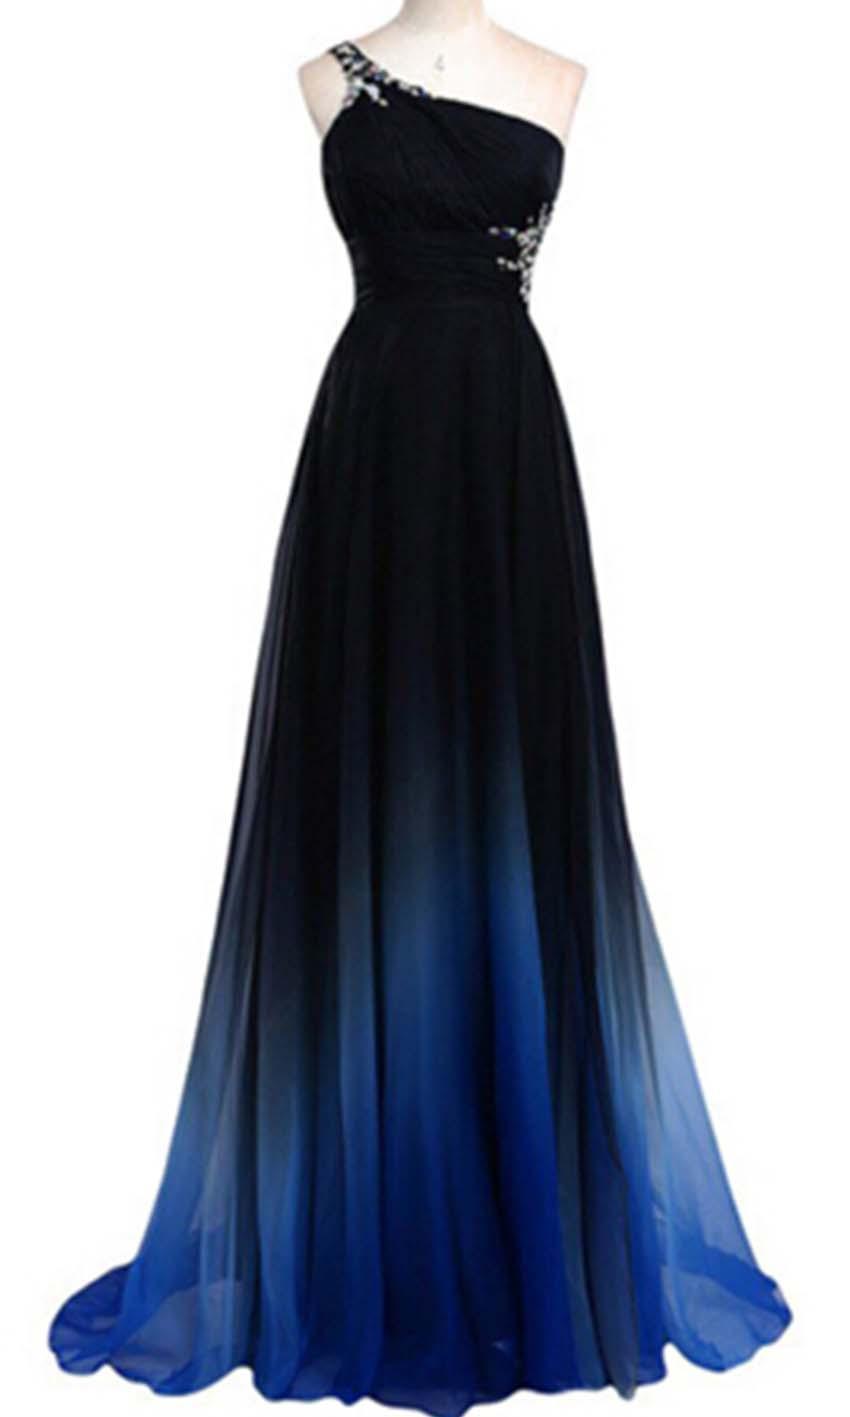 زفاف - Blue Ombre One Shoulder Long Prom Dress KSP433